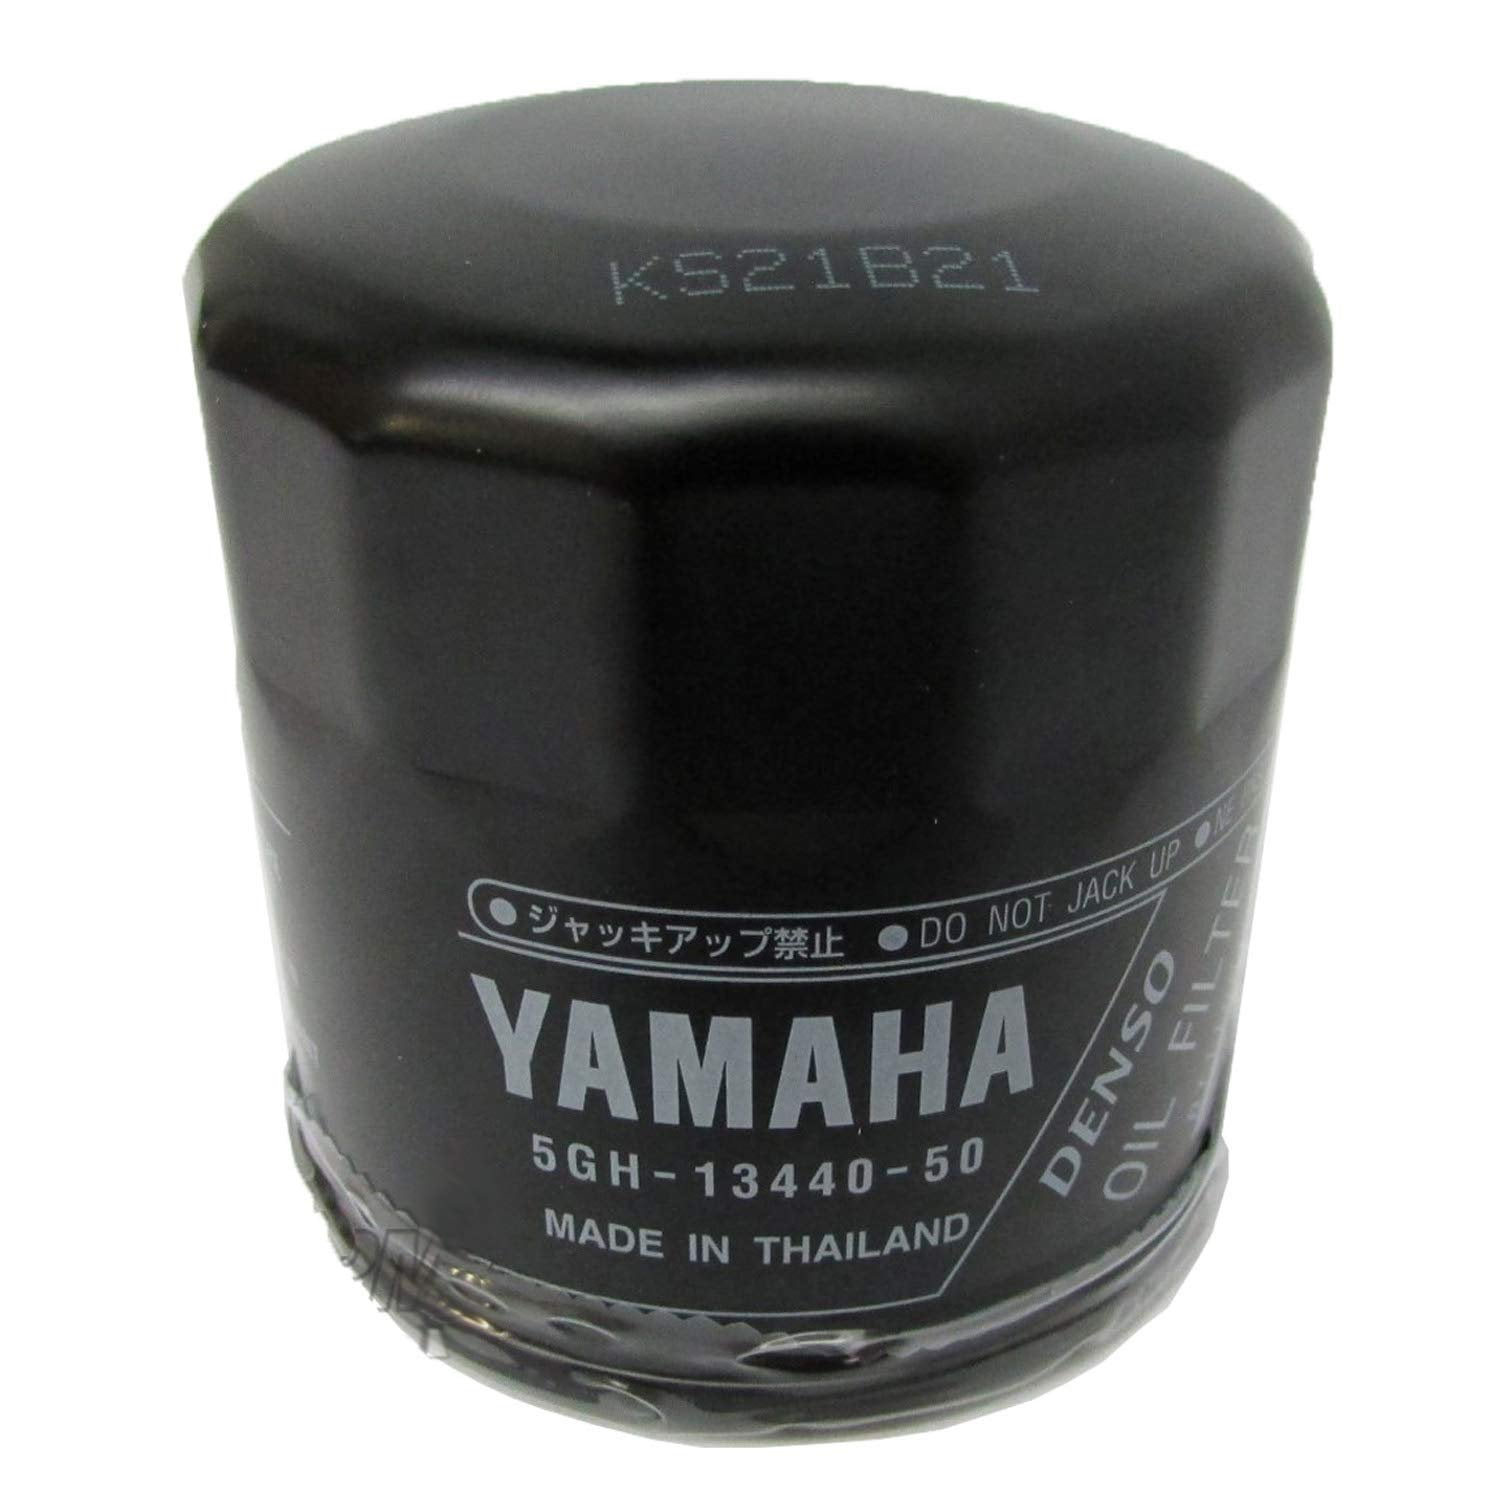 yamaha oil filter